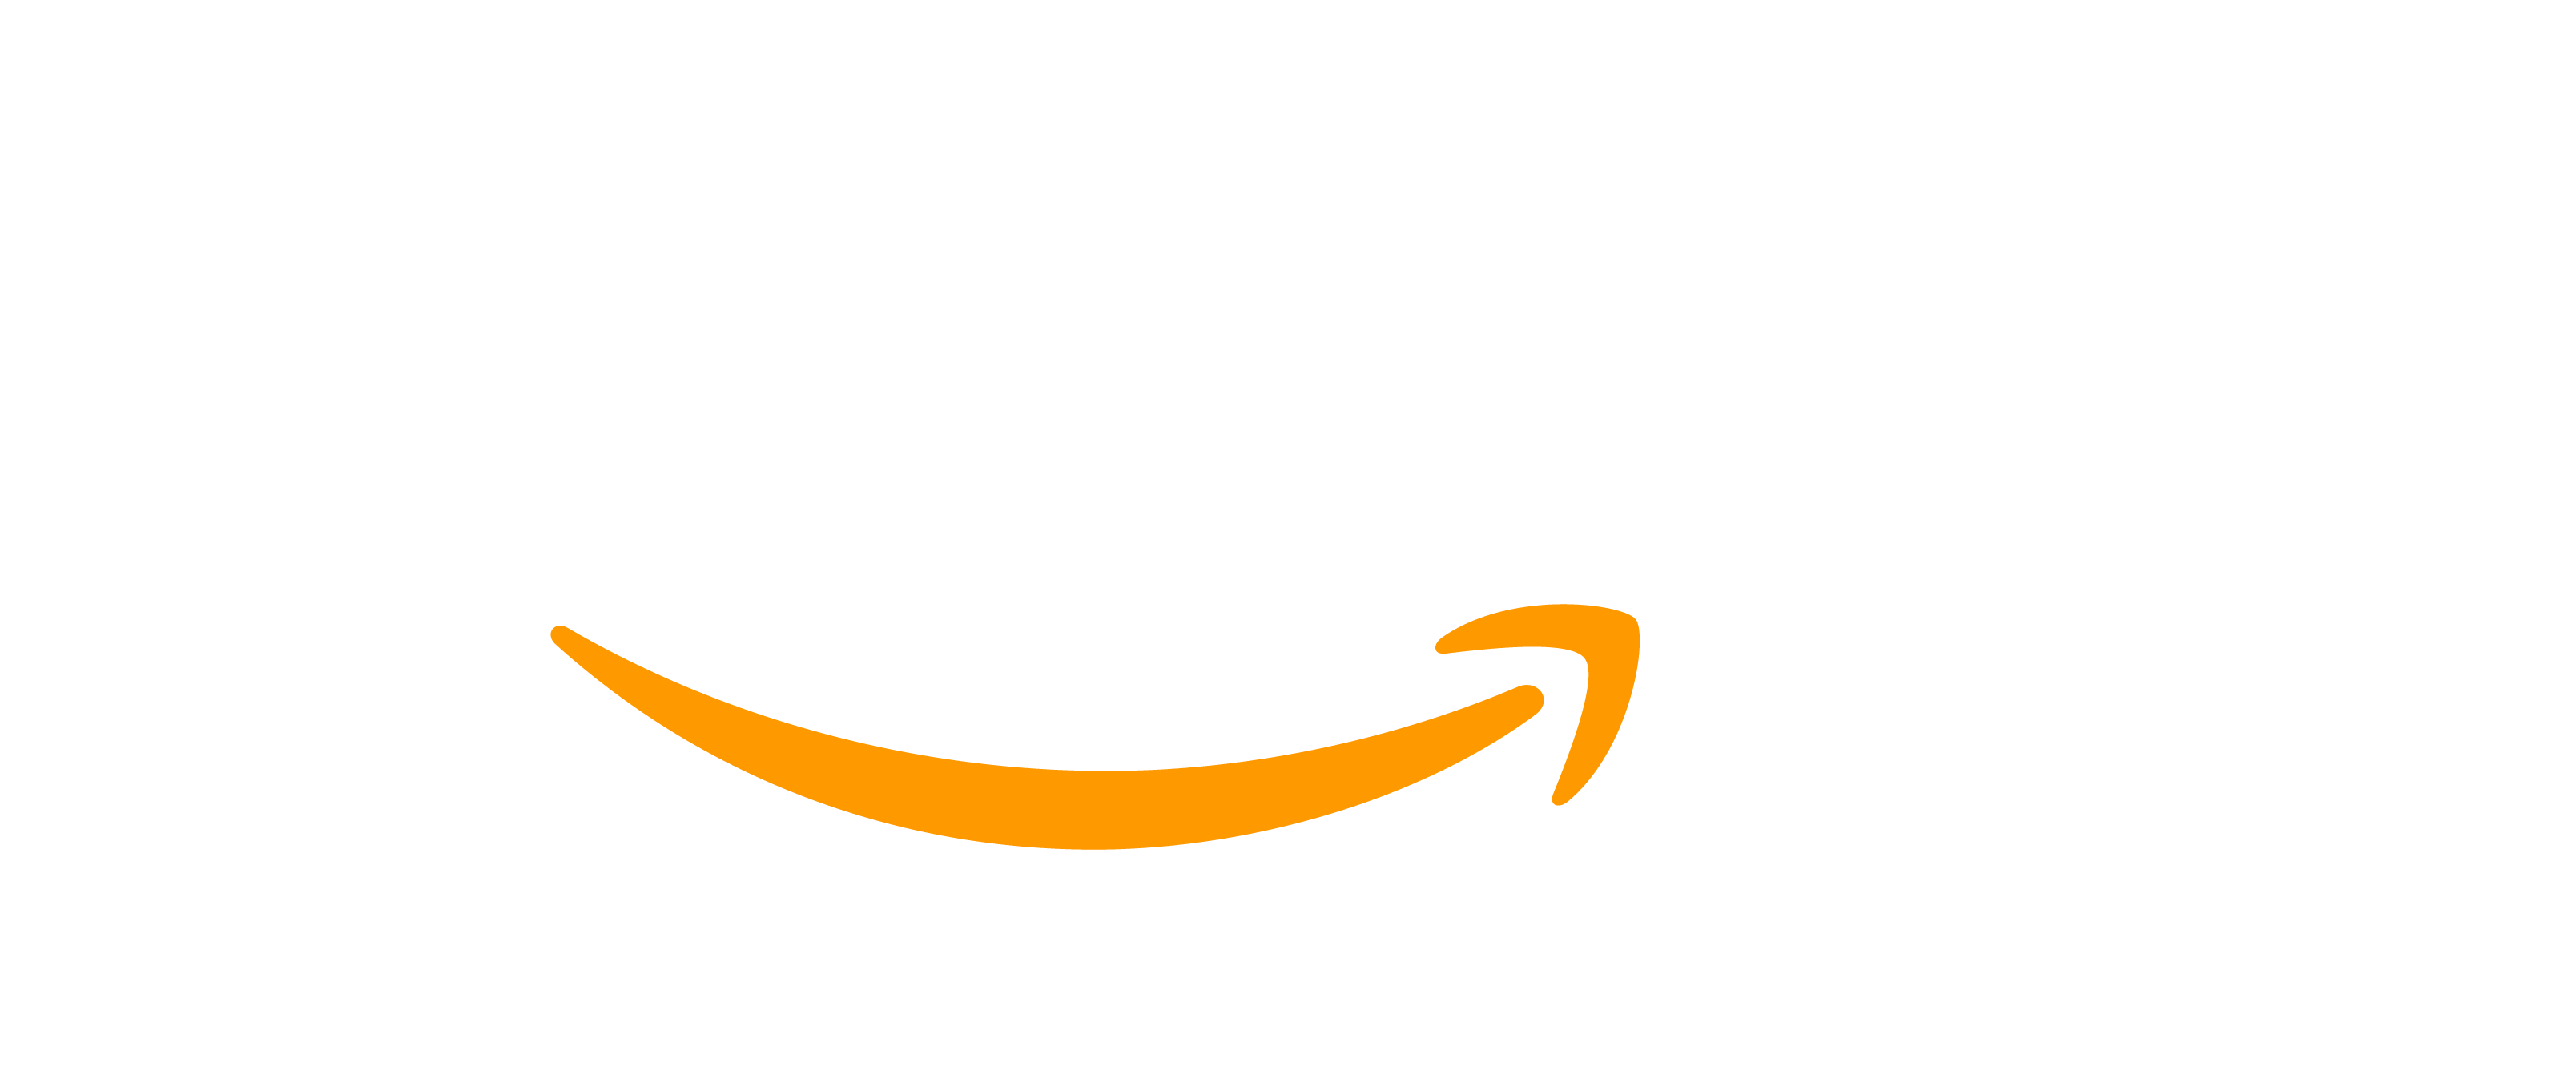 amazon-logo-white